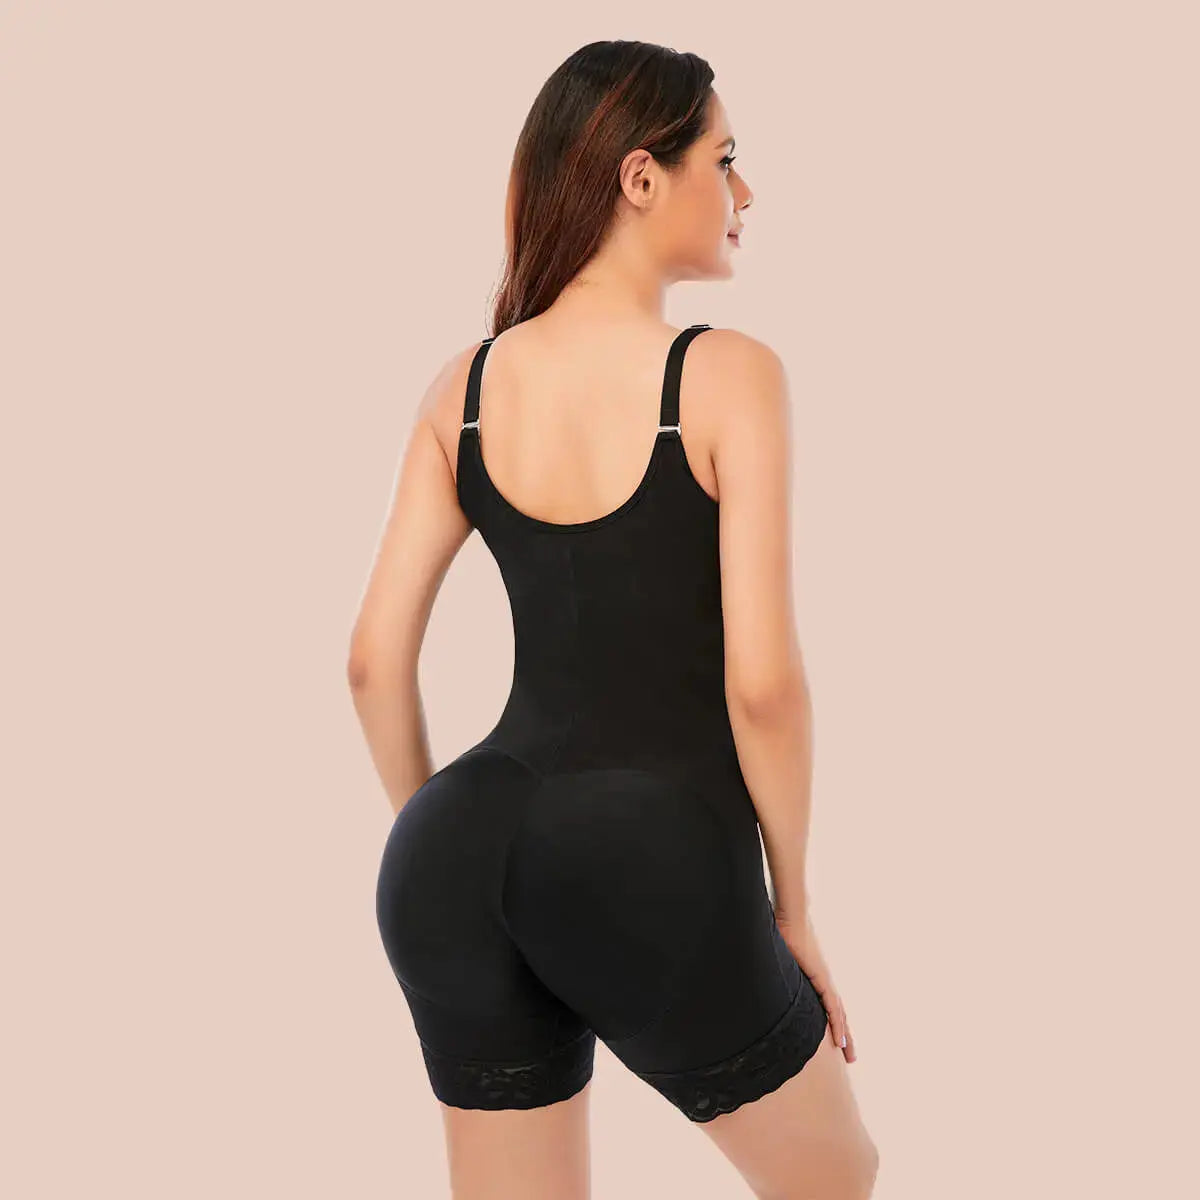 Butt Lifter Fajas Colombianas Seamless Women High Waist Slimming